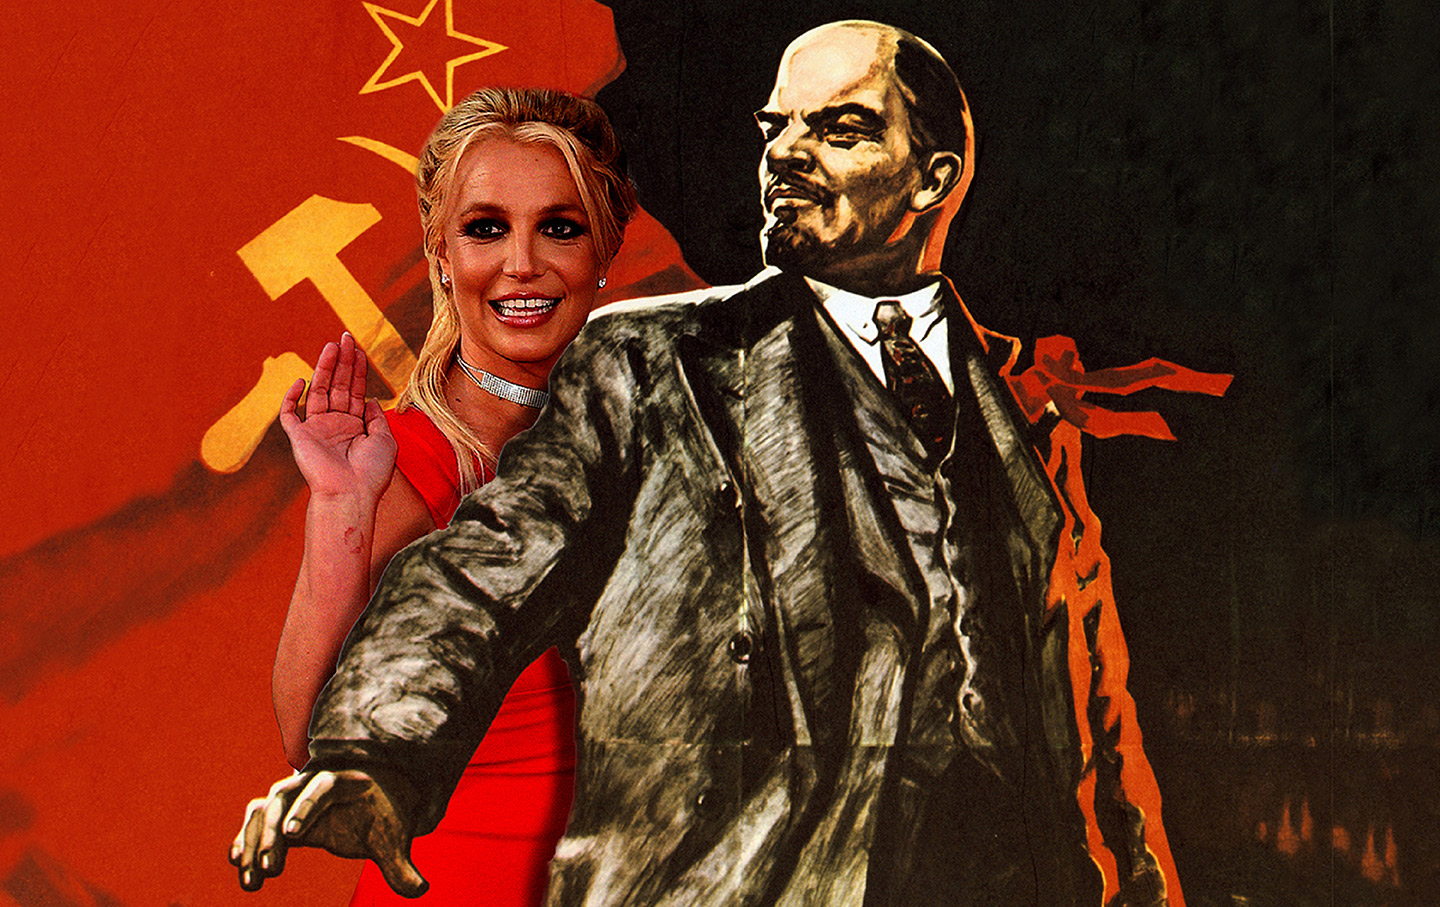 Vladimir Lenin holds back Britney Spears.